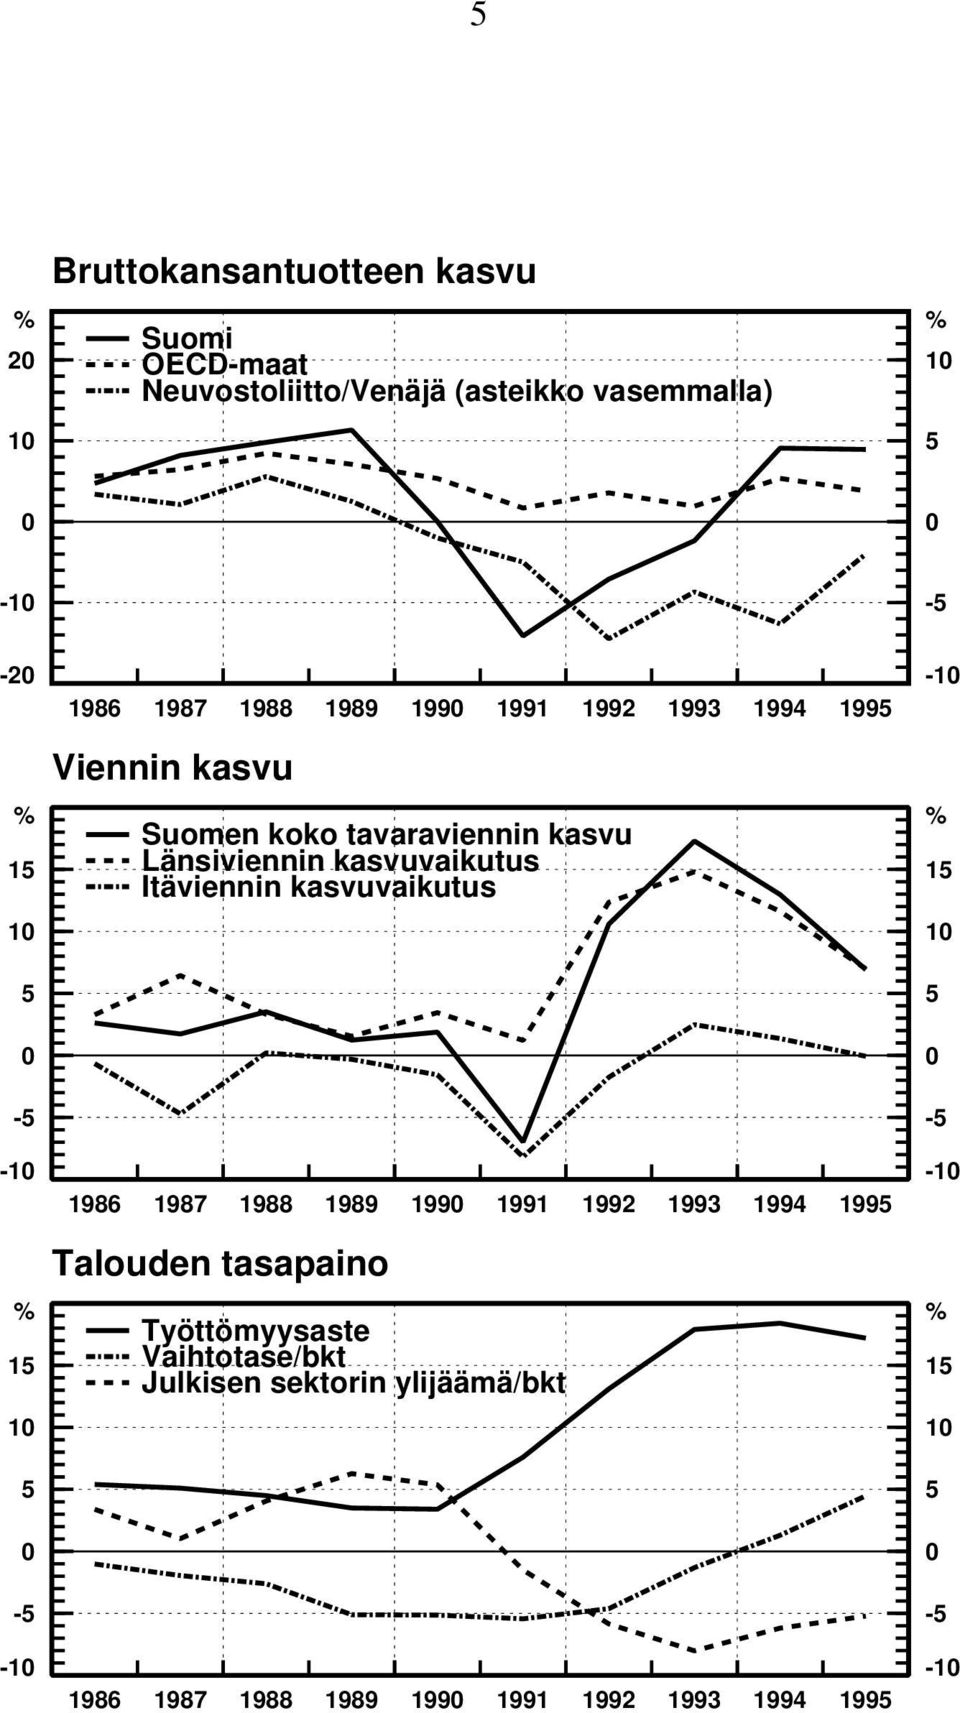 Itäviennin kasvuvaikutus 10-10 10 5 0-5 5 0-5 -10 1986 1987 1988 1989 1990 1991 1992 1993 1994 1995 Talouden tasapaino % %